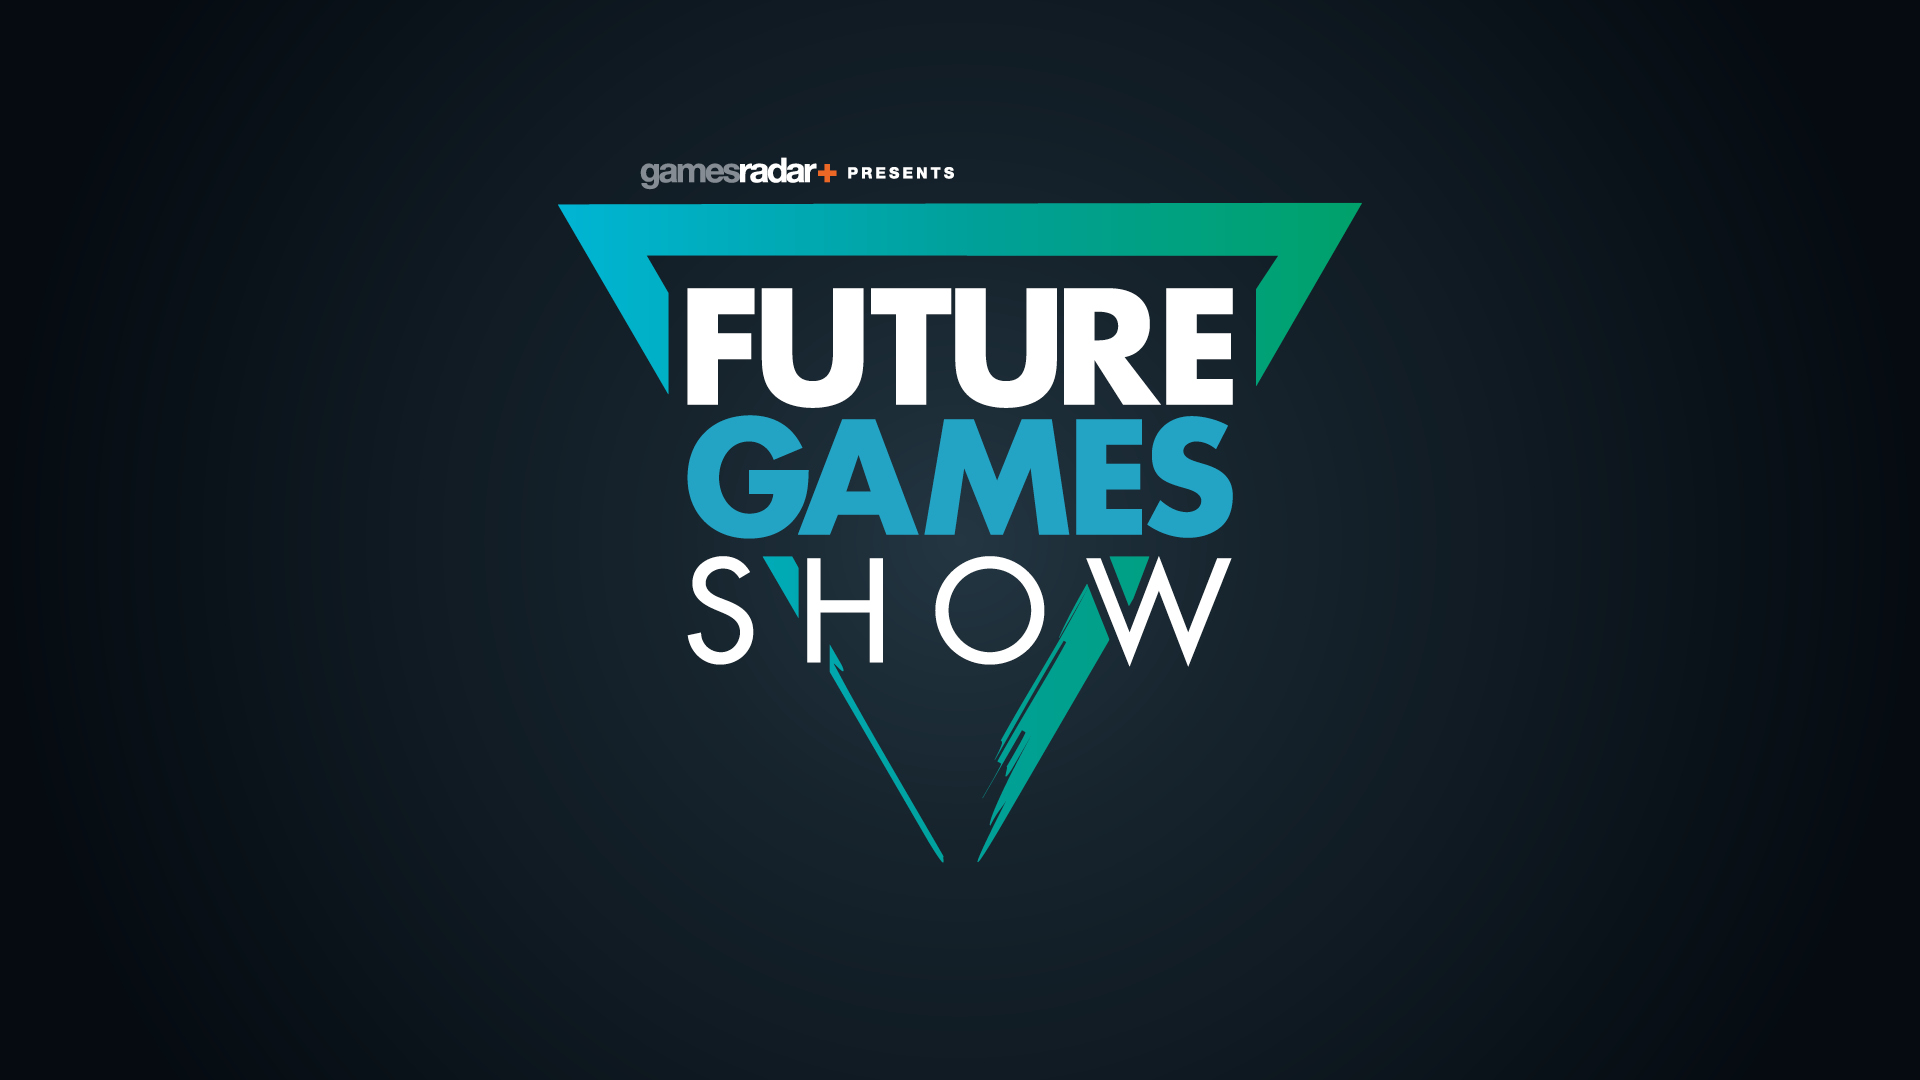 Future Games Show E3 digital event